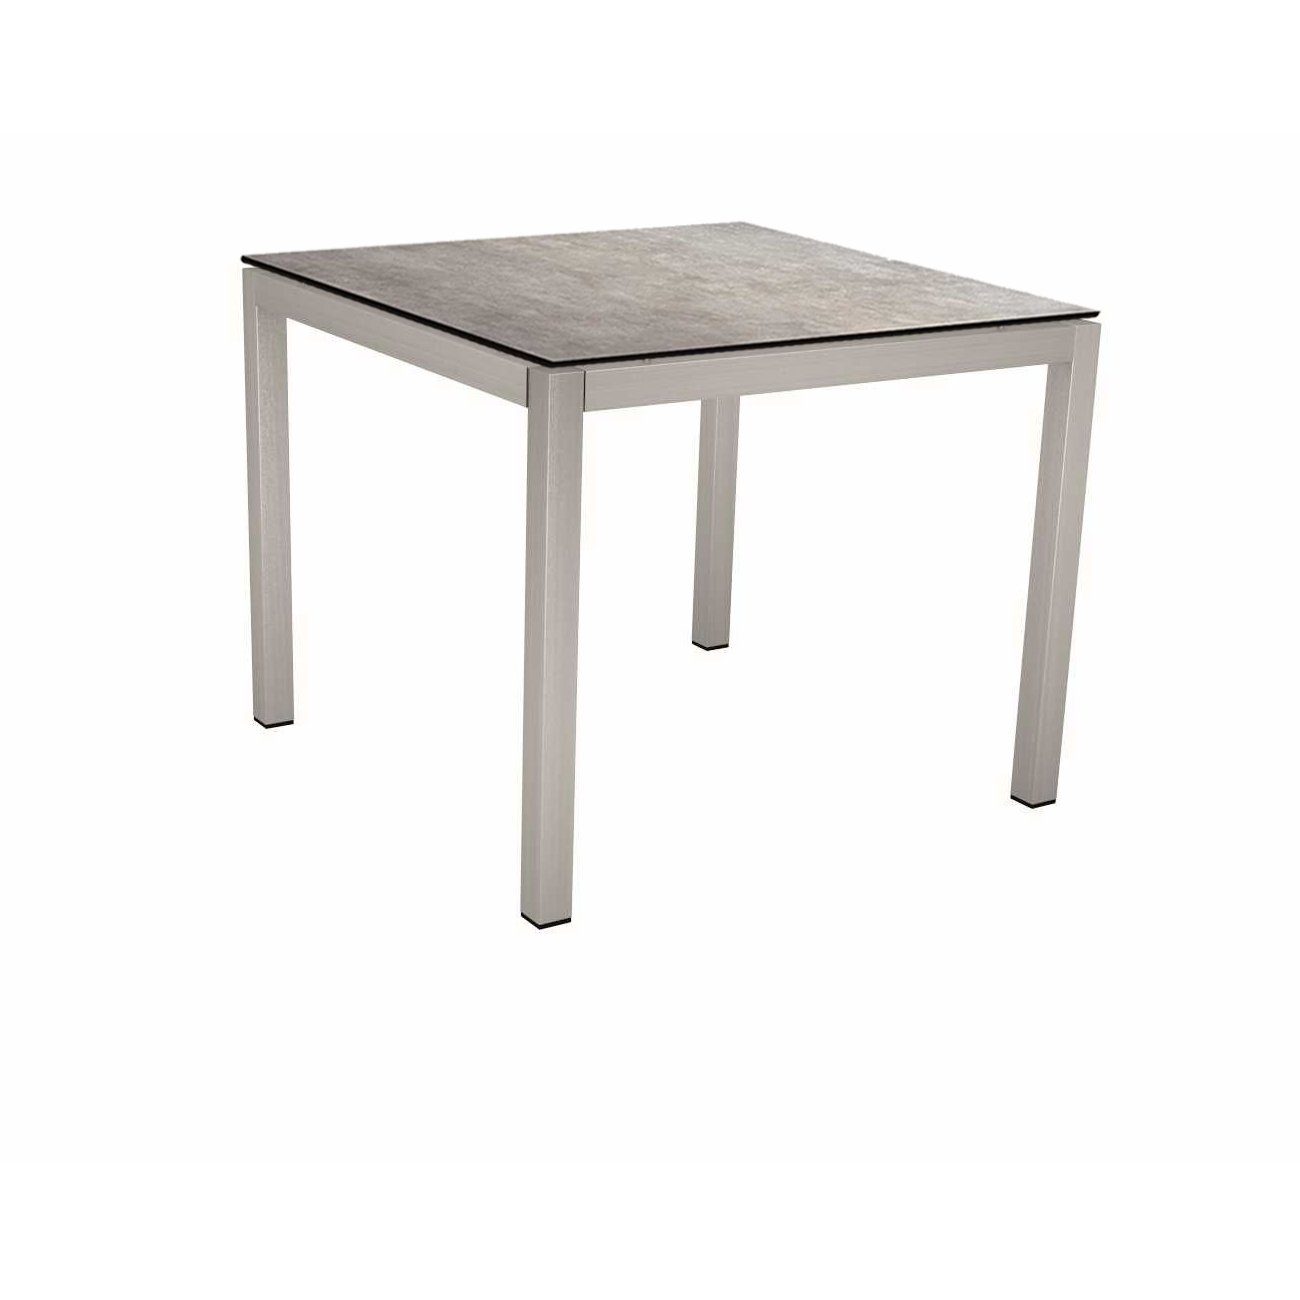 Stern Tischsystem, Gestell Edelstahl Vierkantrohr, Tischplatte HPL Metallic grau, 80x80 cm